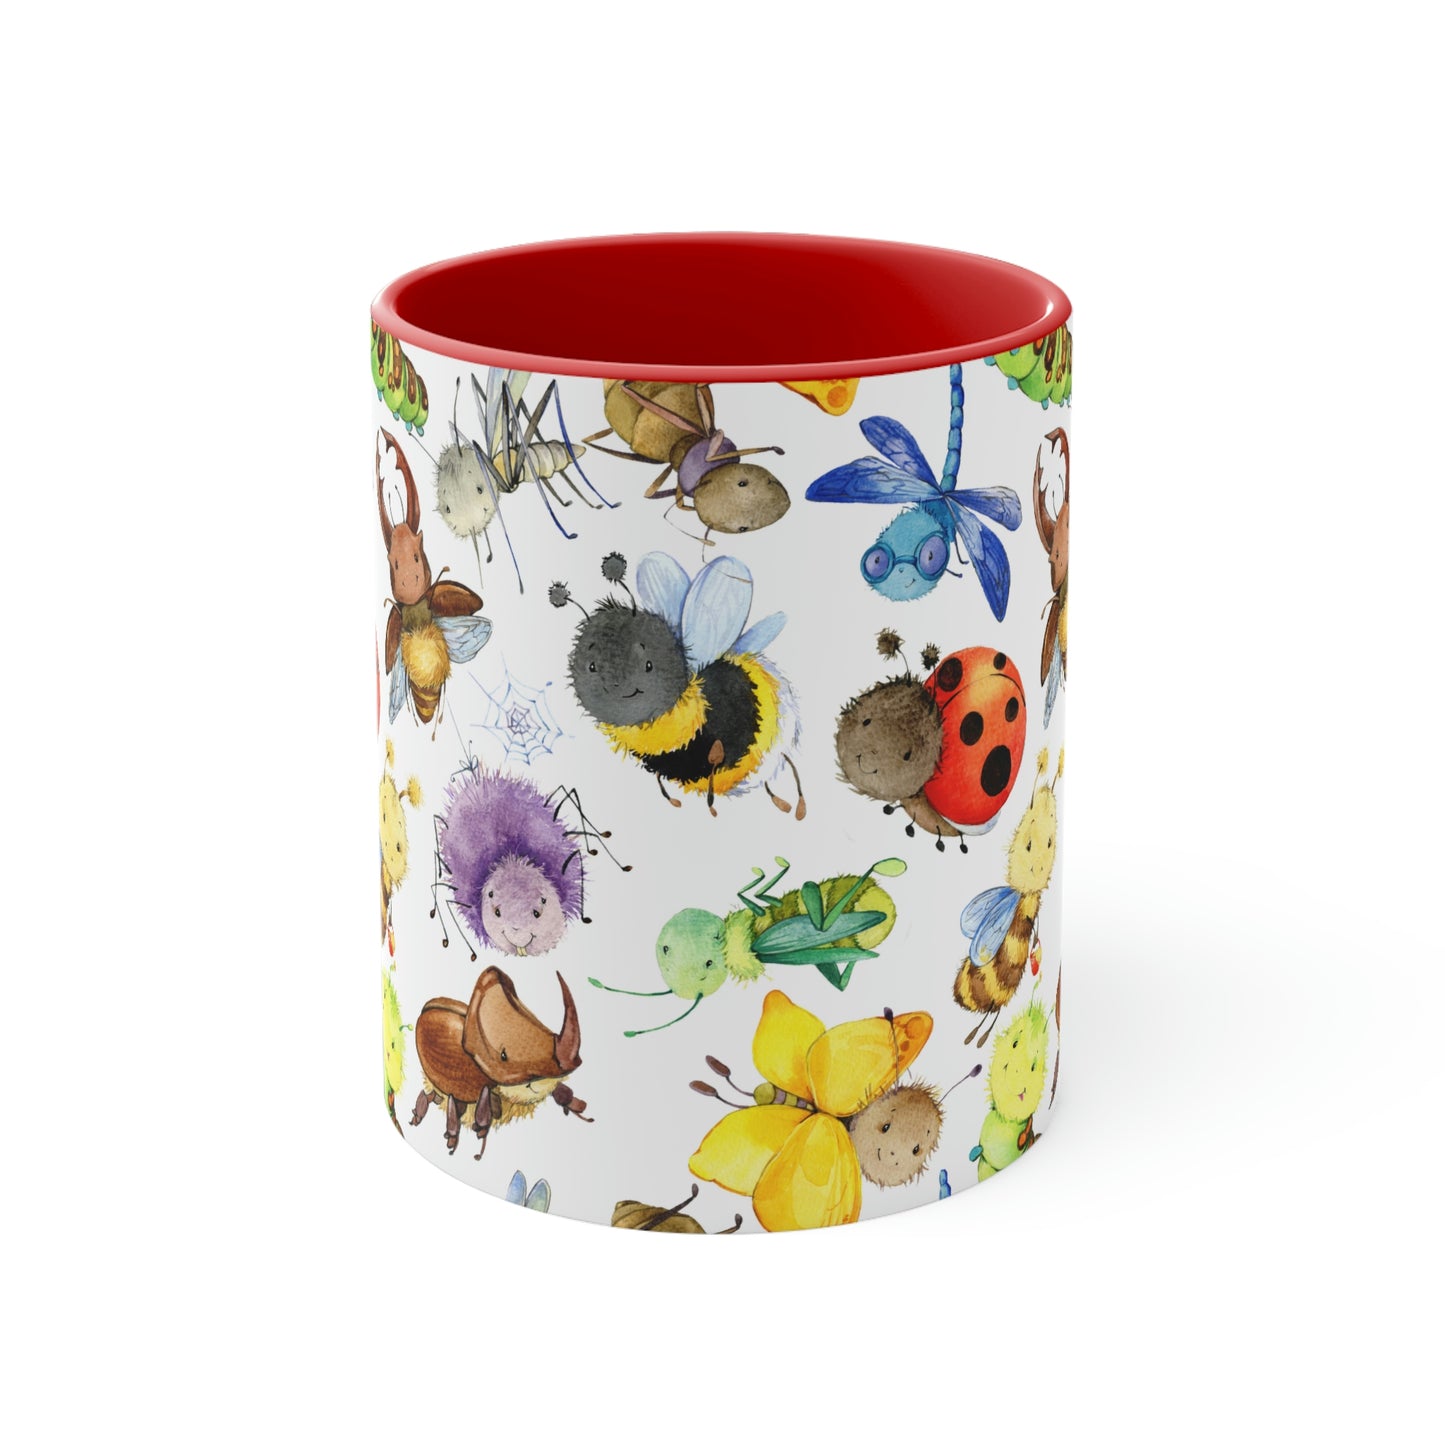 Ladybugs, Bees and Dragonflies Coffee Mug, 11oz